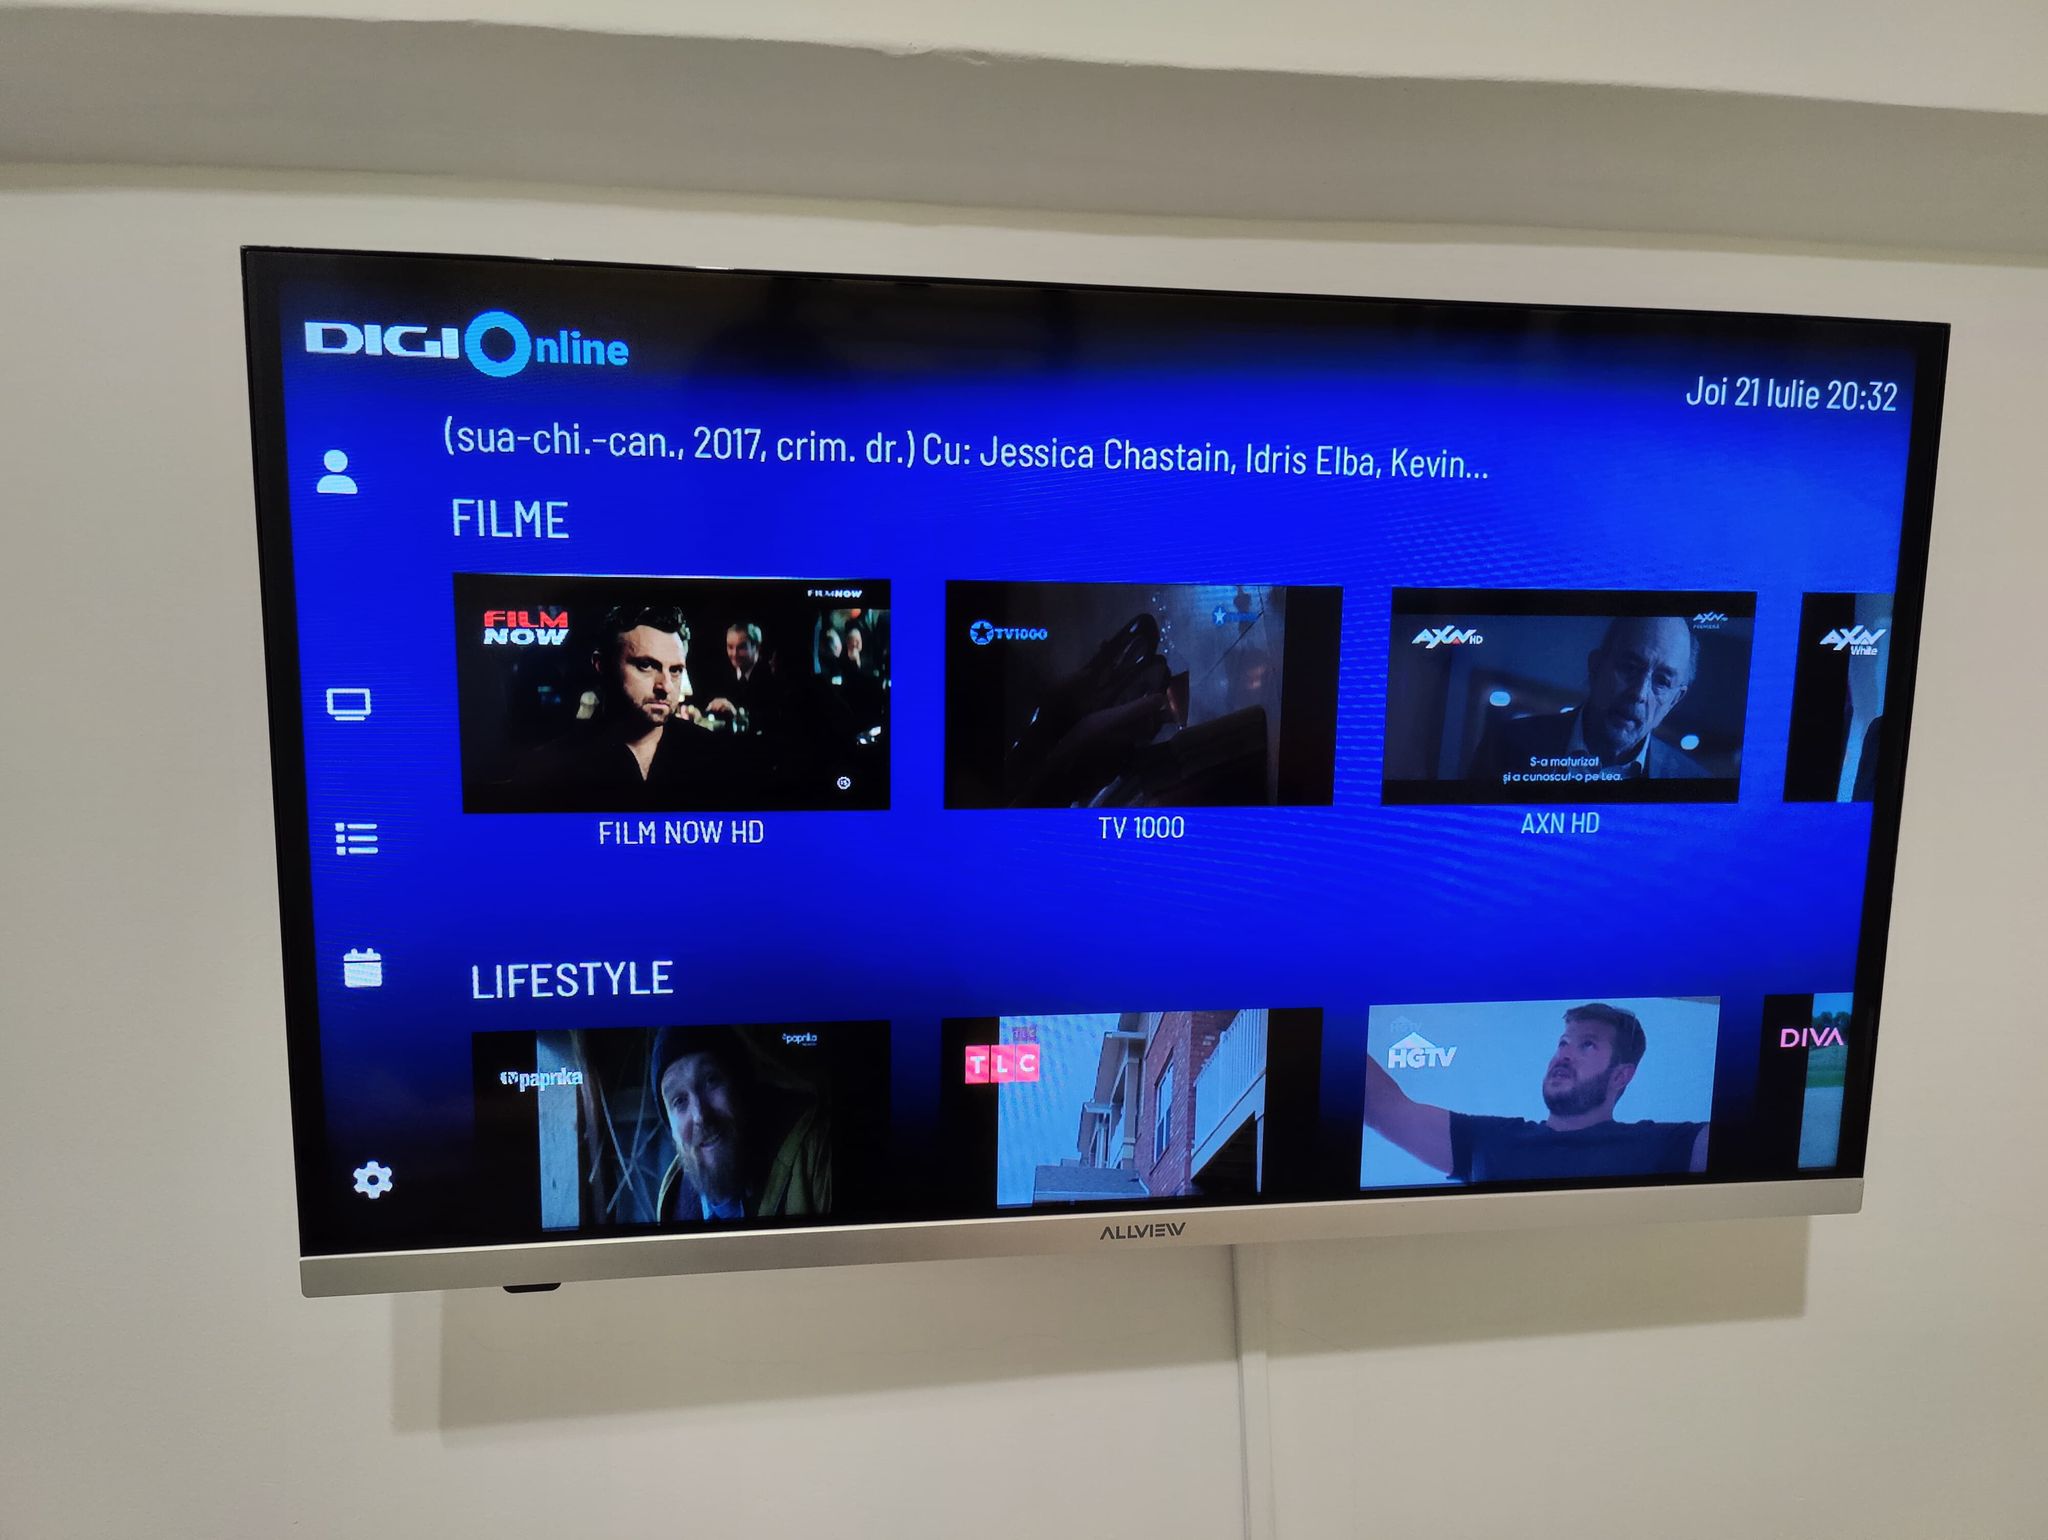 Digi este acum disponibilă şi pe Android TV : Gadget.ro – Hi-Tech Lifestyle